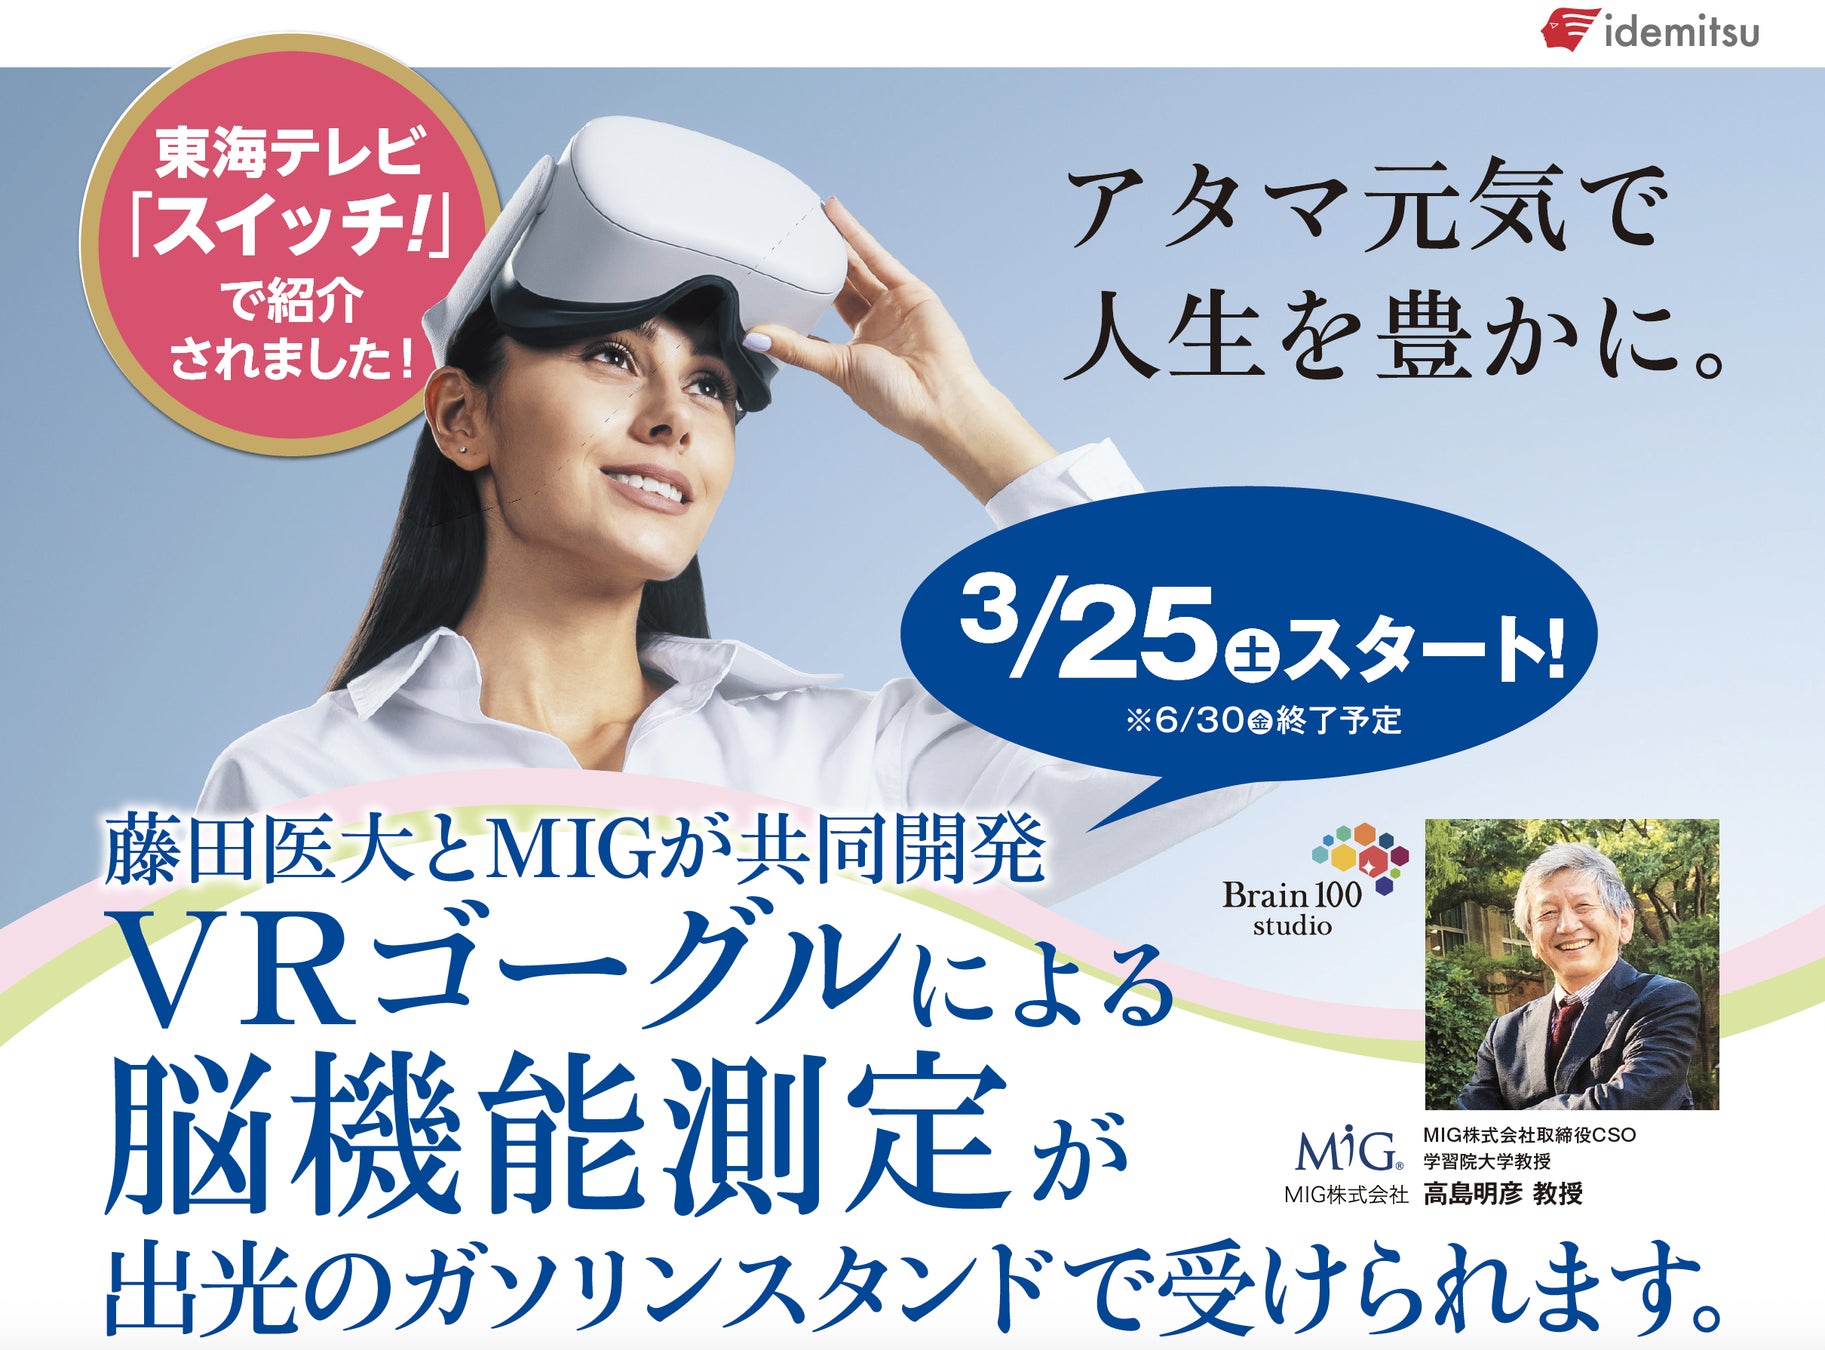 愛知県内の出光興産サービスステーションでMIGの脳機能測定サービスを提供